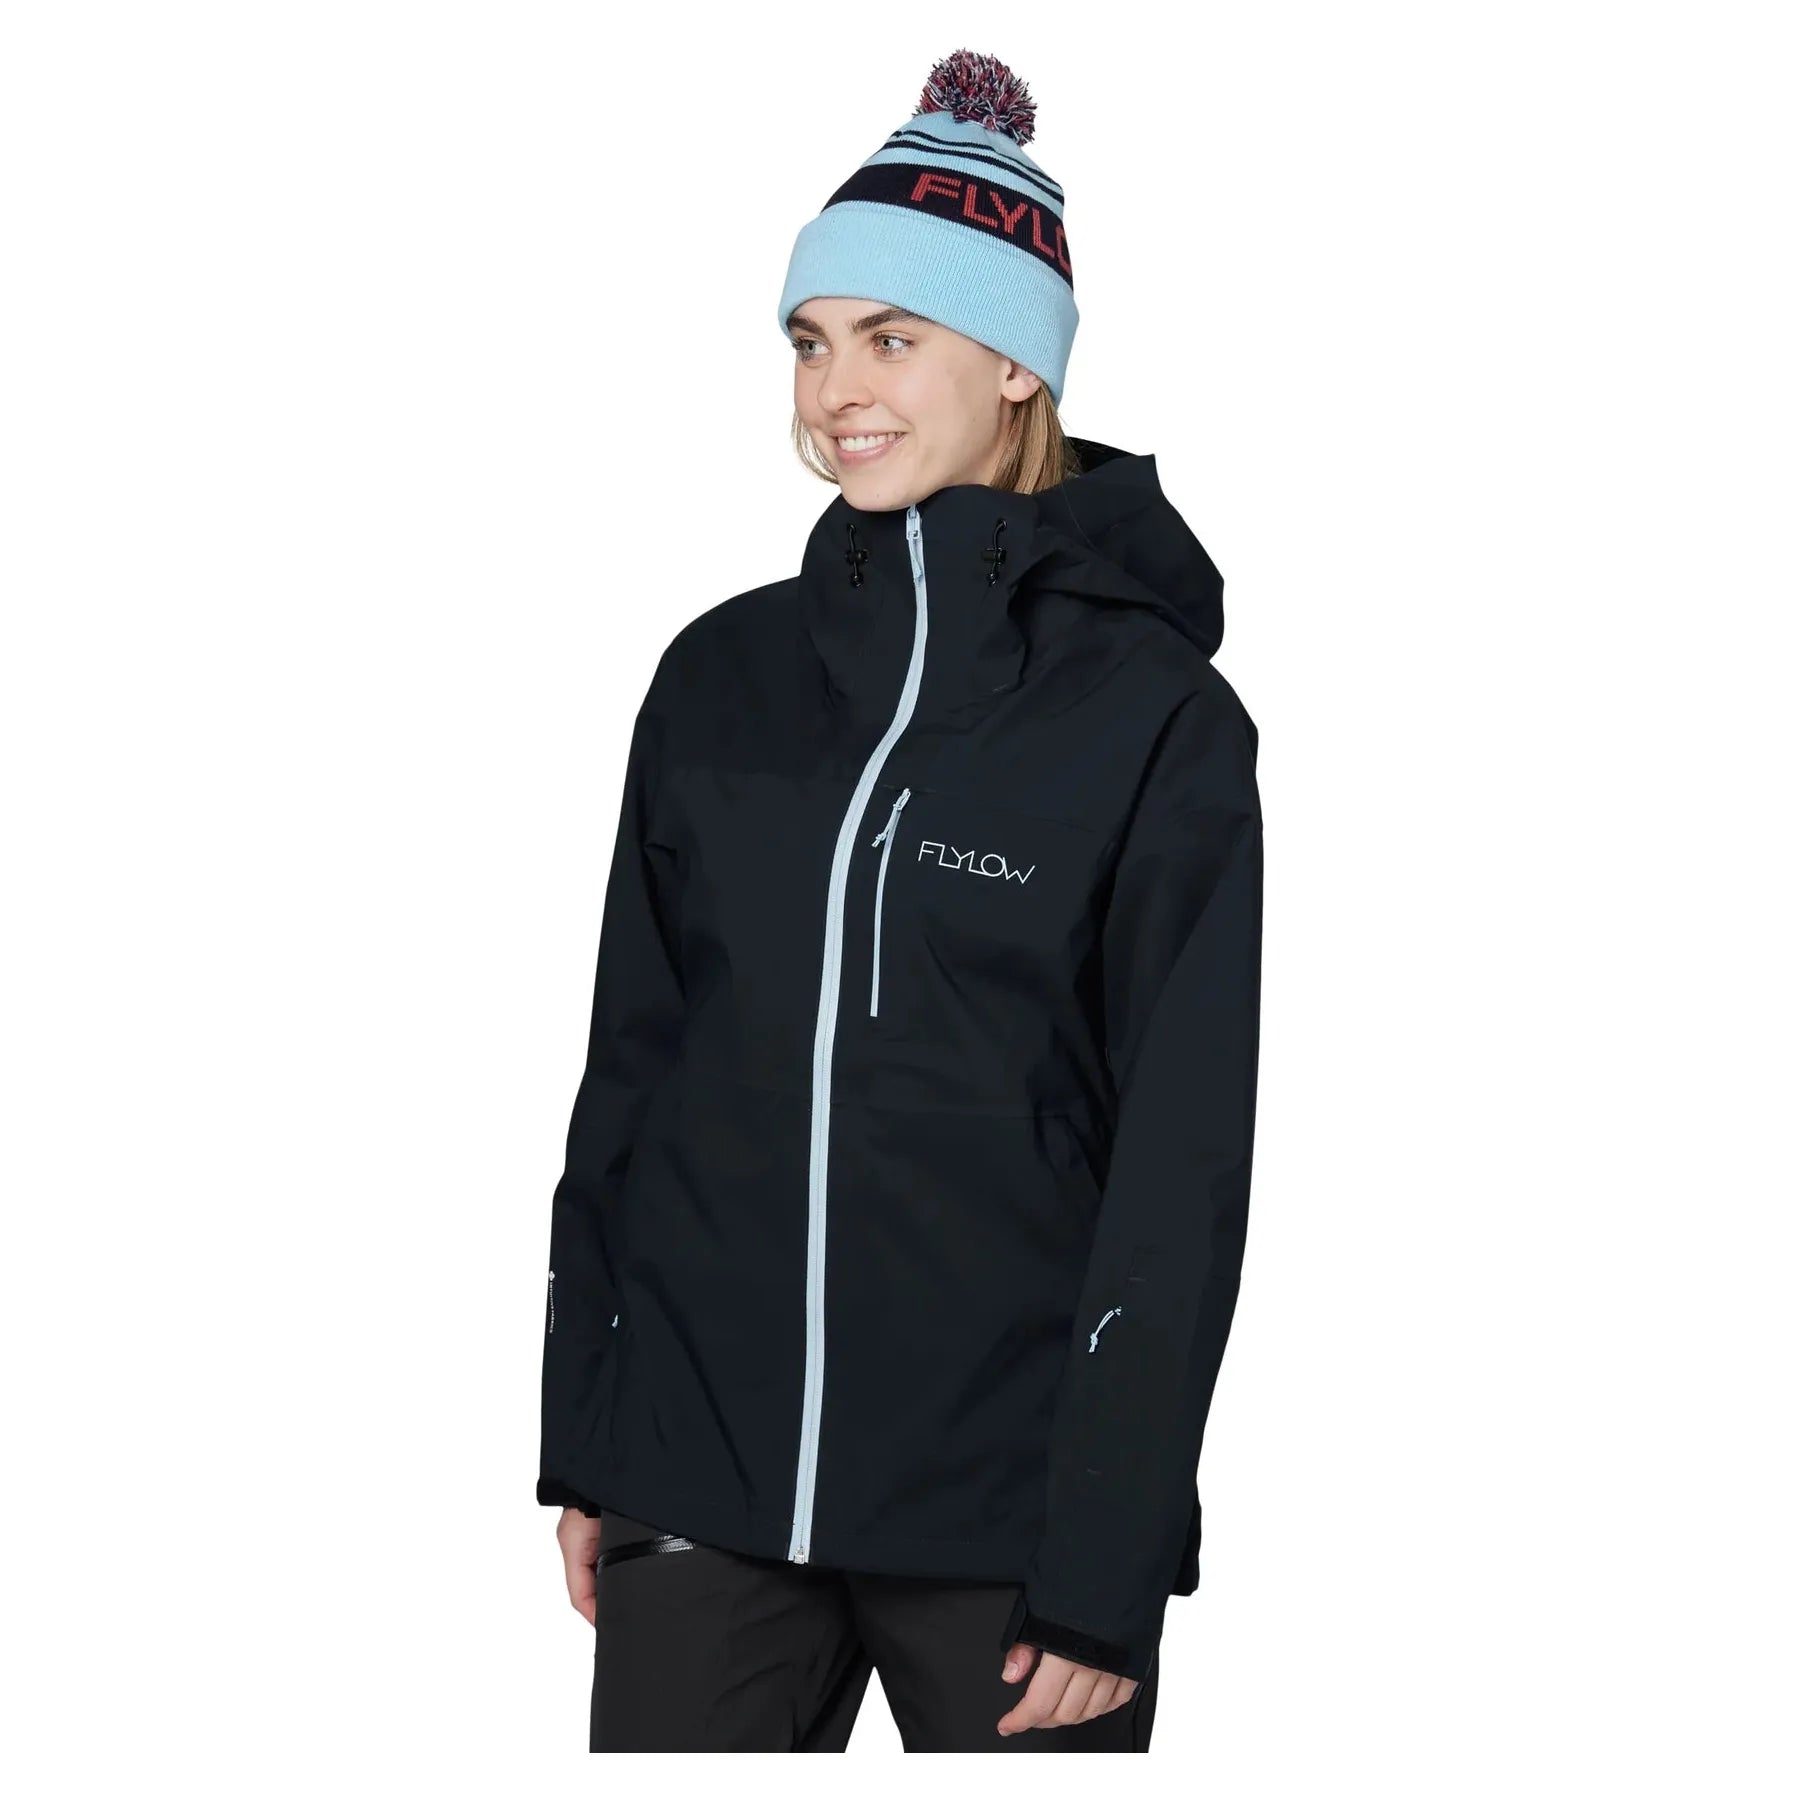 Manteau de Ski Imperméable Lucy 3L pour Femmes||Ski Jacket Lucy 3L for Women's